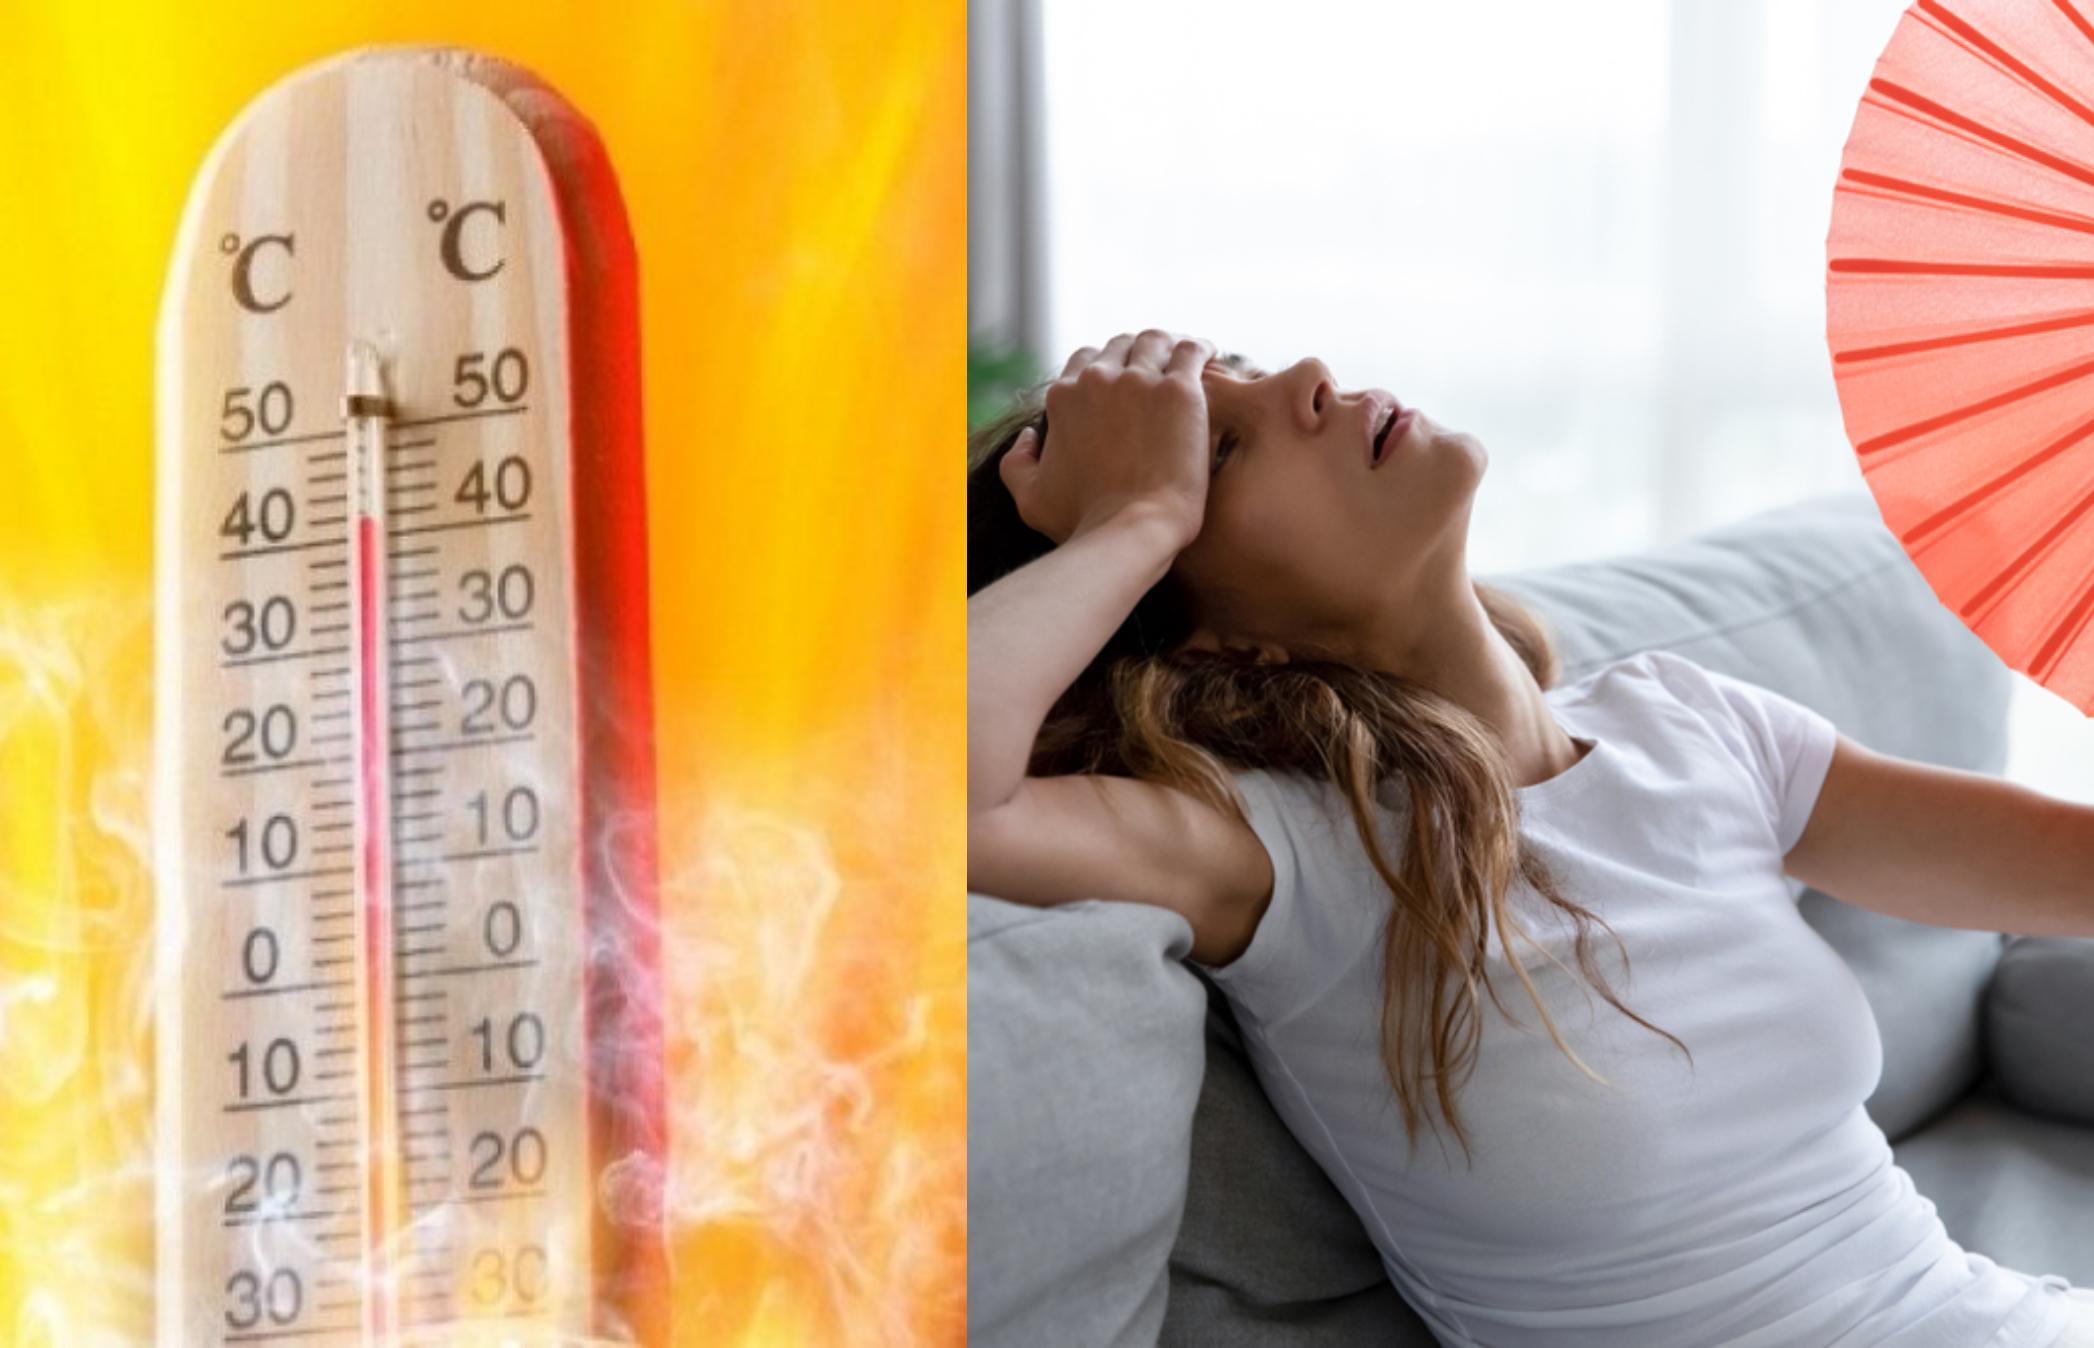 Θερμοπληξία- Θερμική εξάντληση λόγο καύσωνα: Αν έχεις αυτά τα συμπτώματα πρέπει να ζητήσεις βοήθεια ΑΜΕΣΩΣ